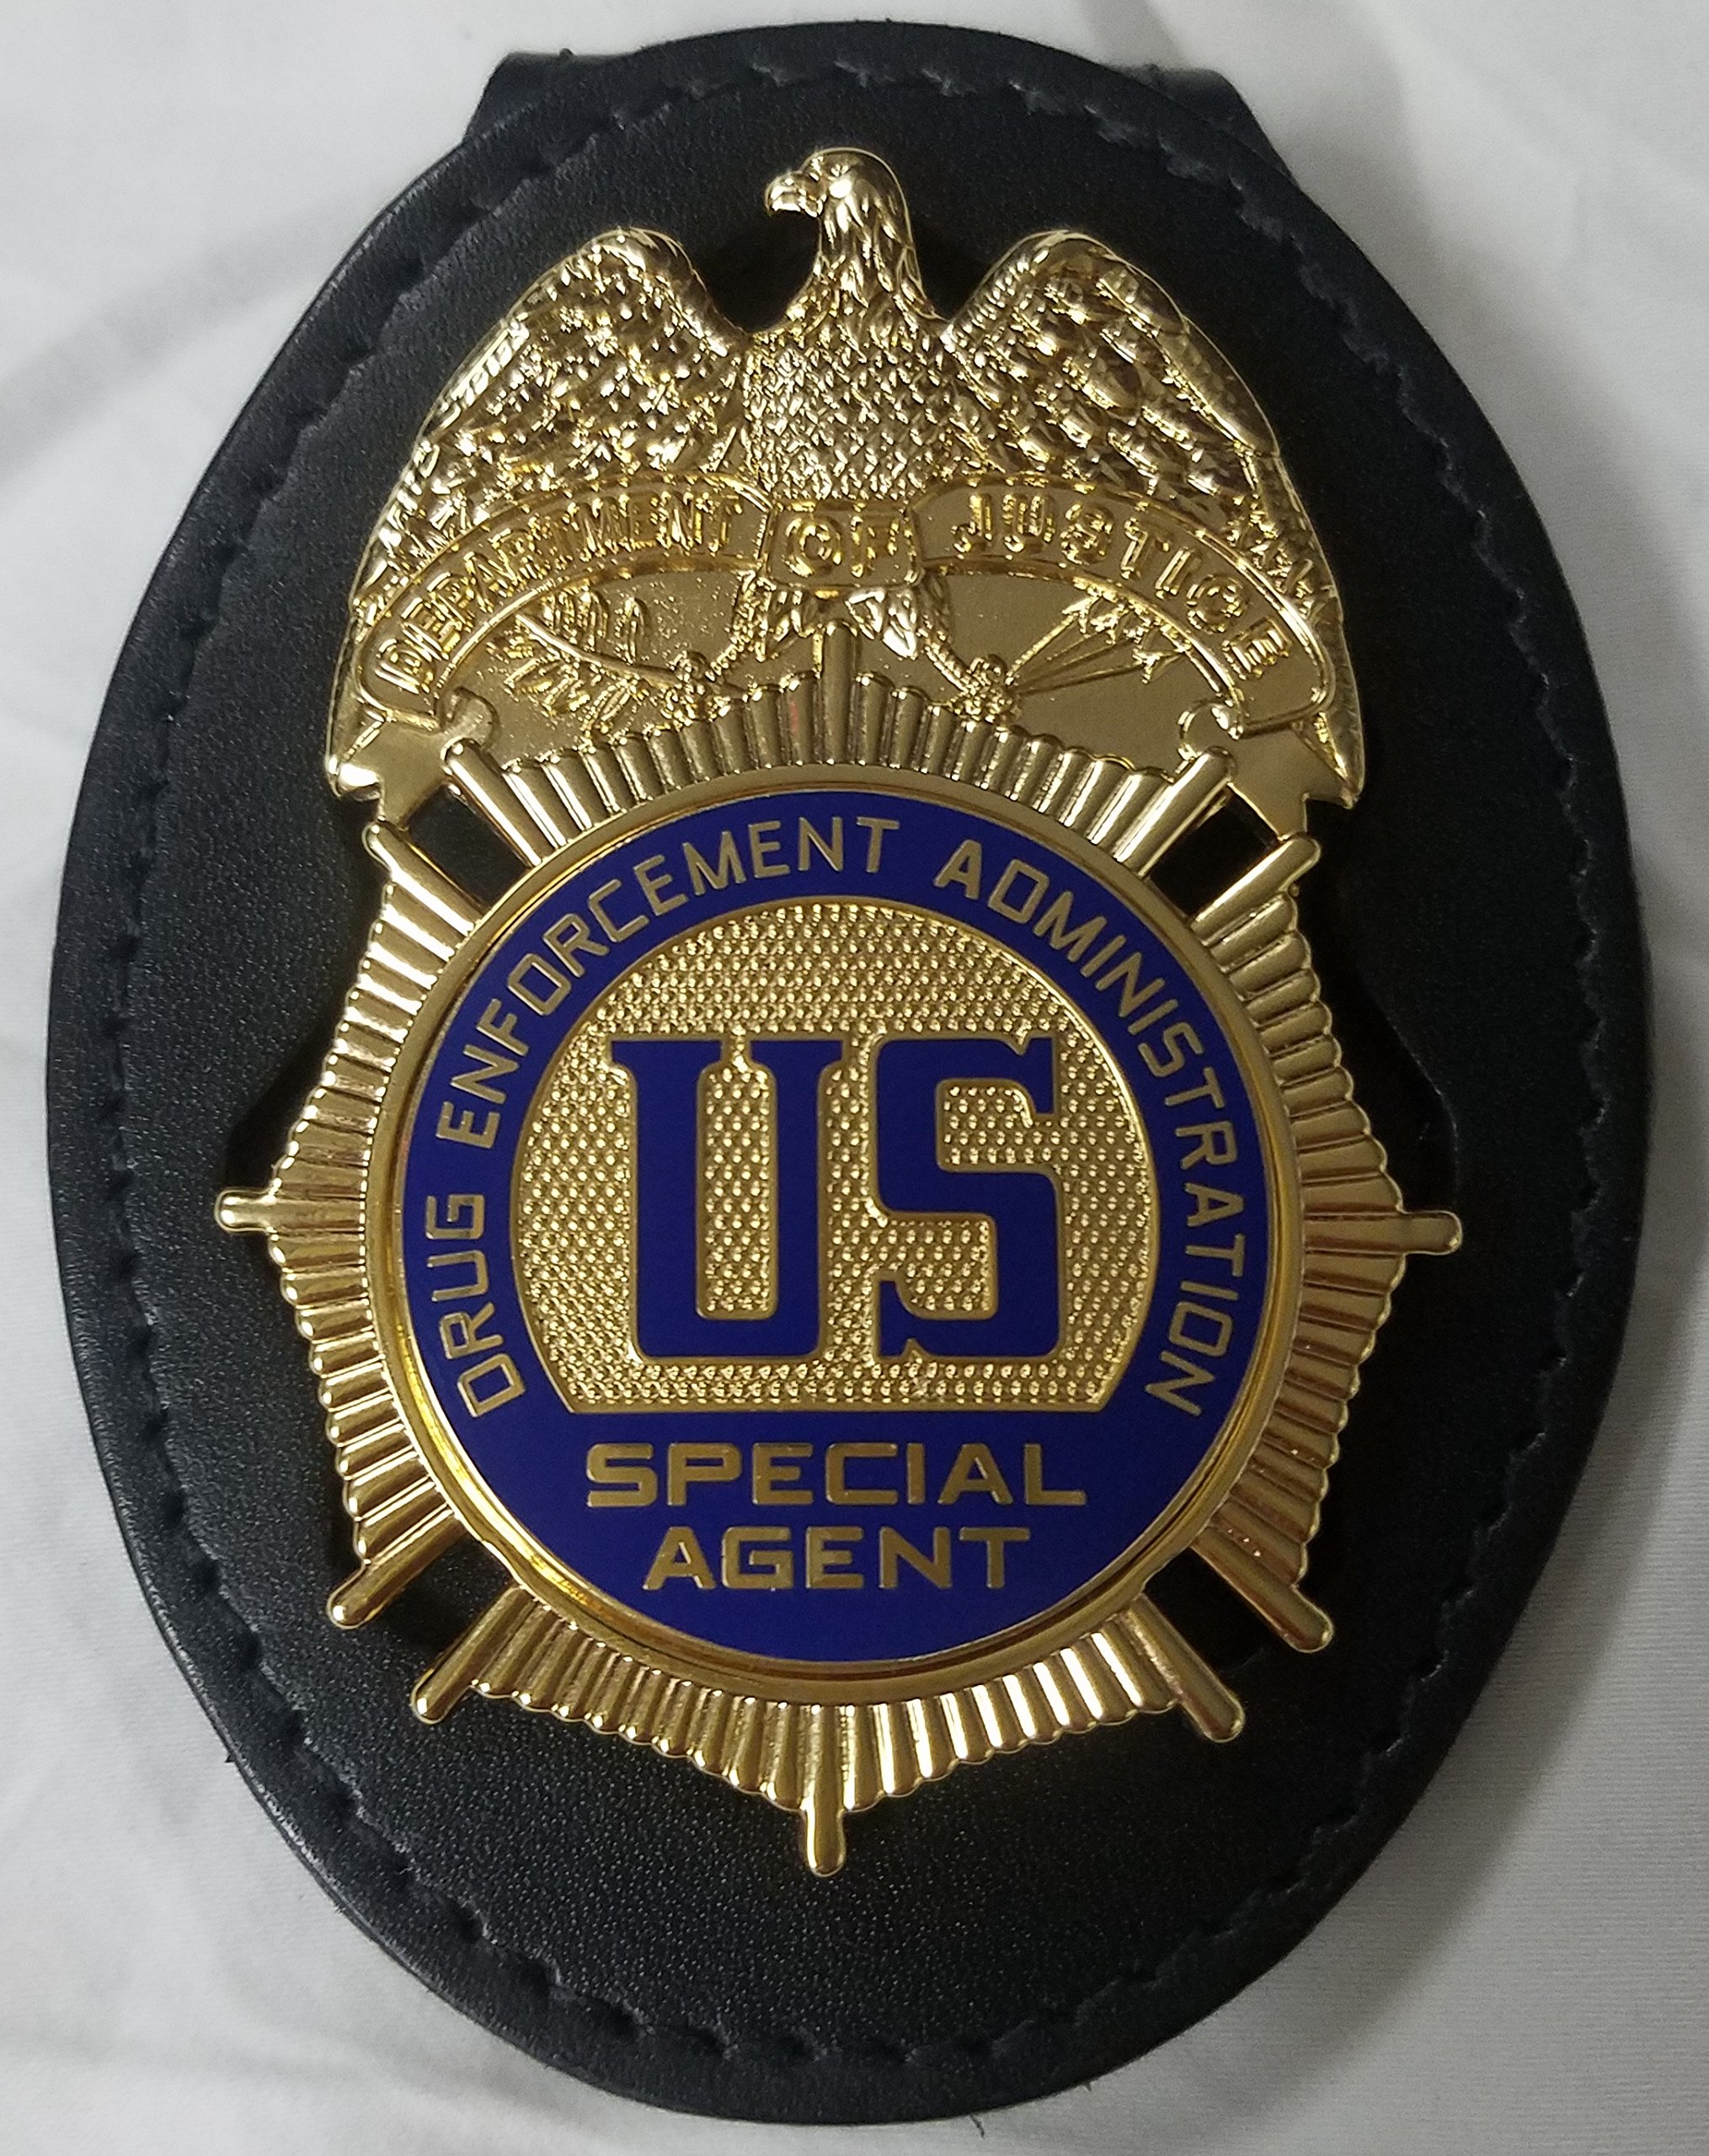 Registered agent badge or stamp